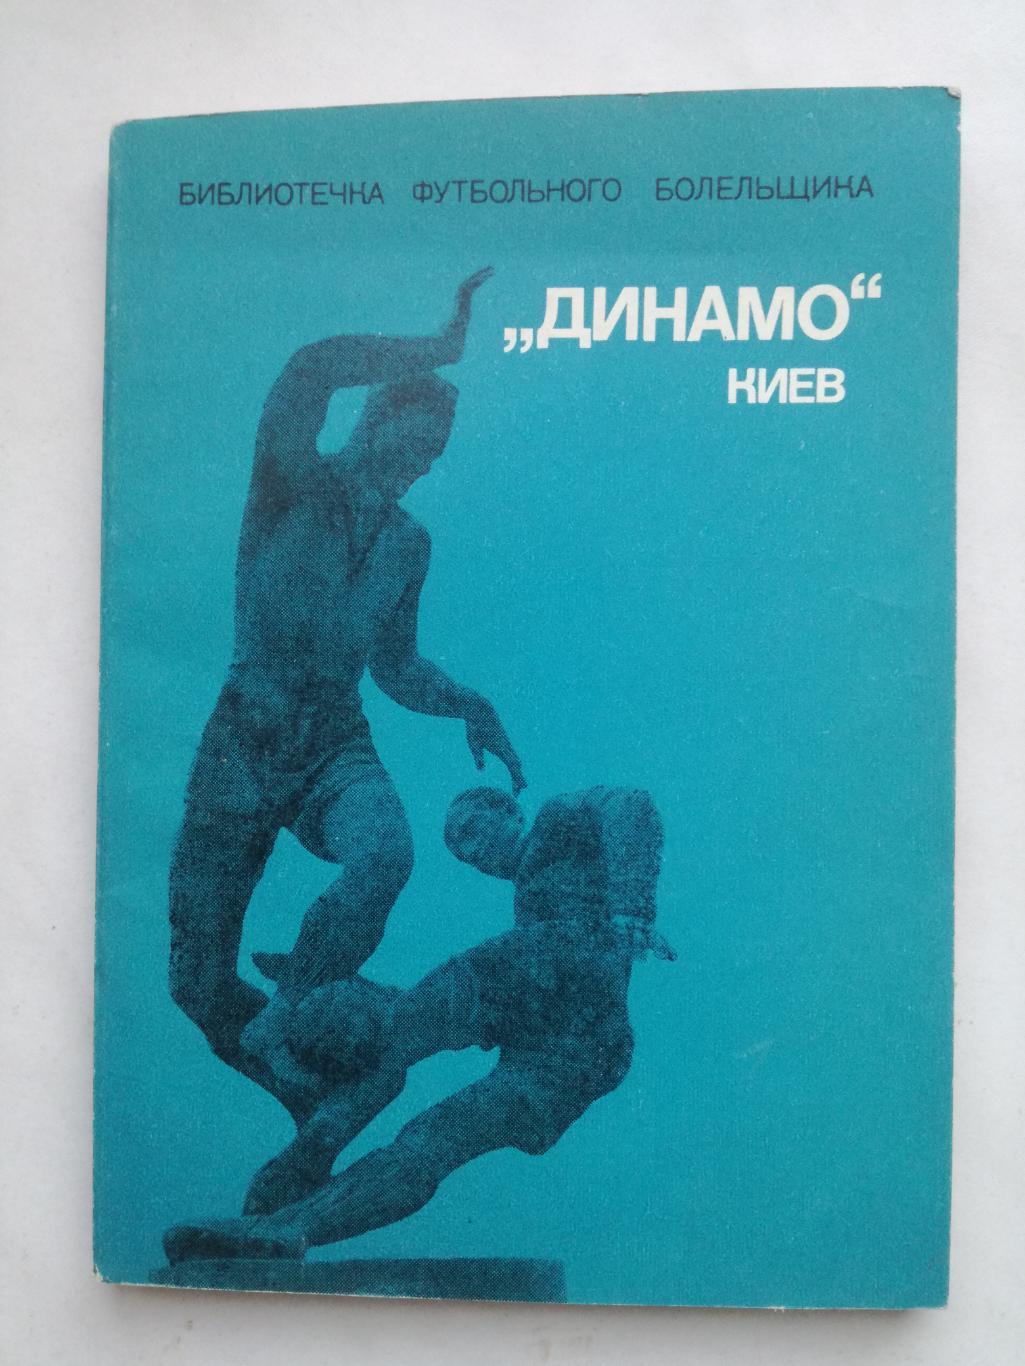 Динамо Киев, библиотечка футбольного болельщика, 1975